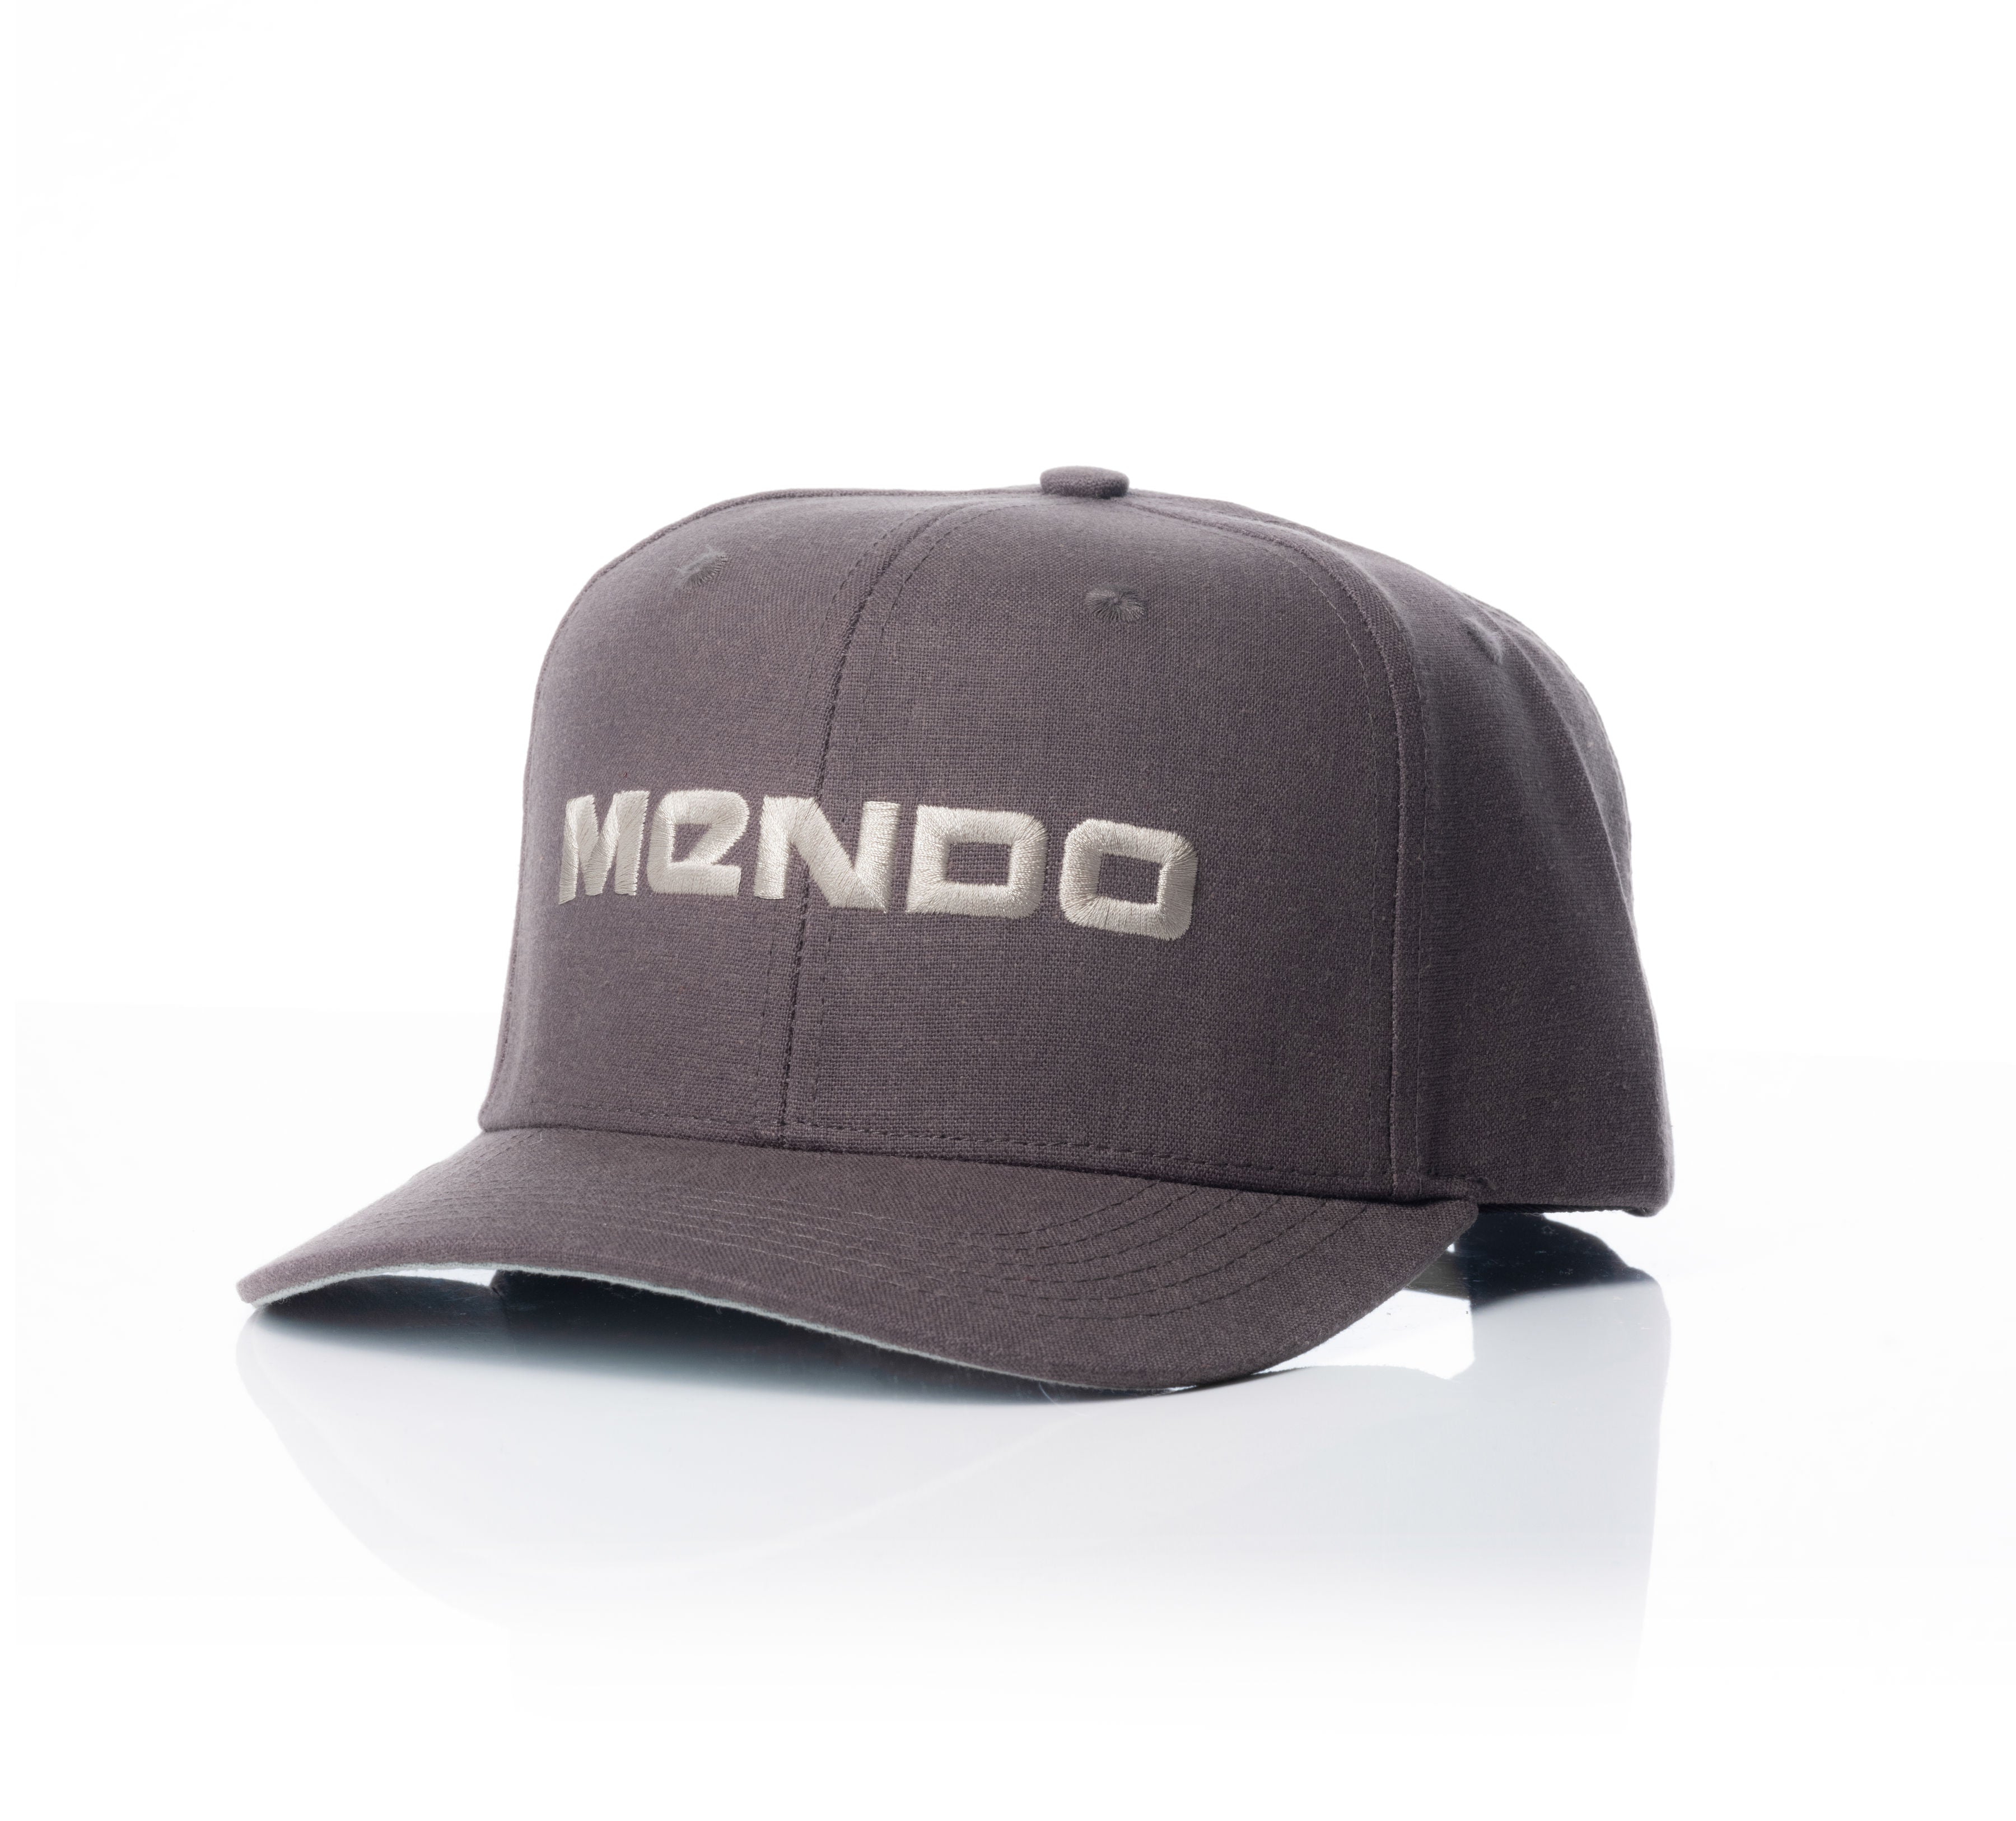 Mendo Eco Hemp Hat Charcoal Wordmark